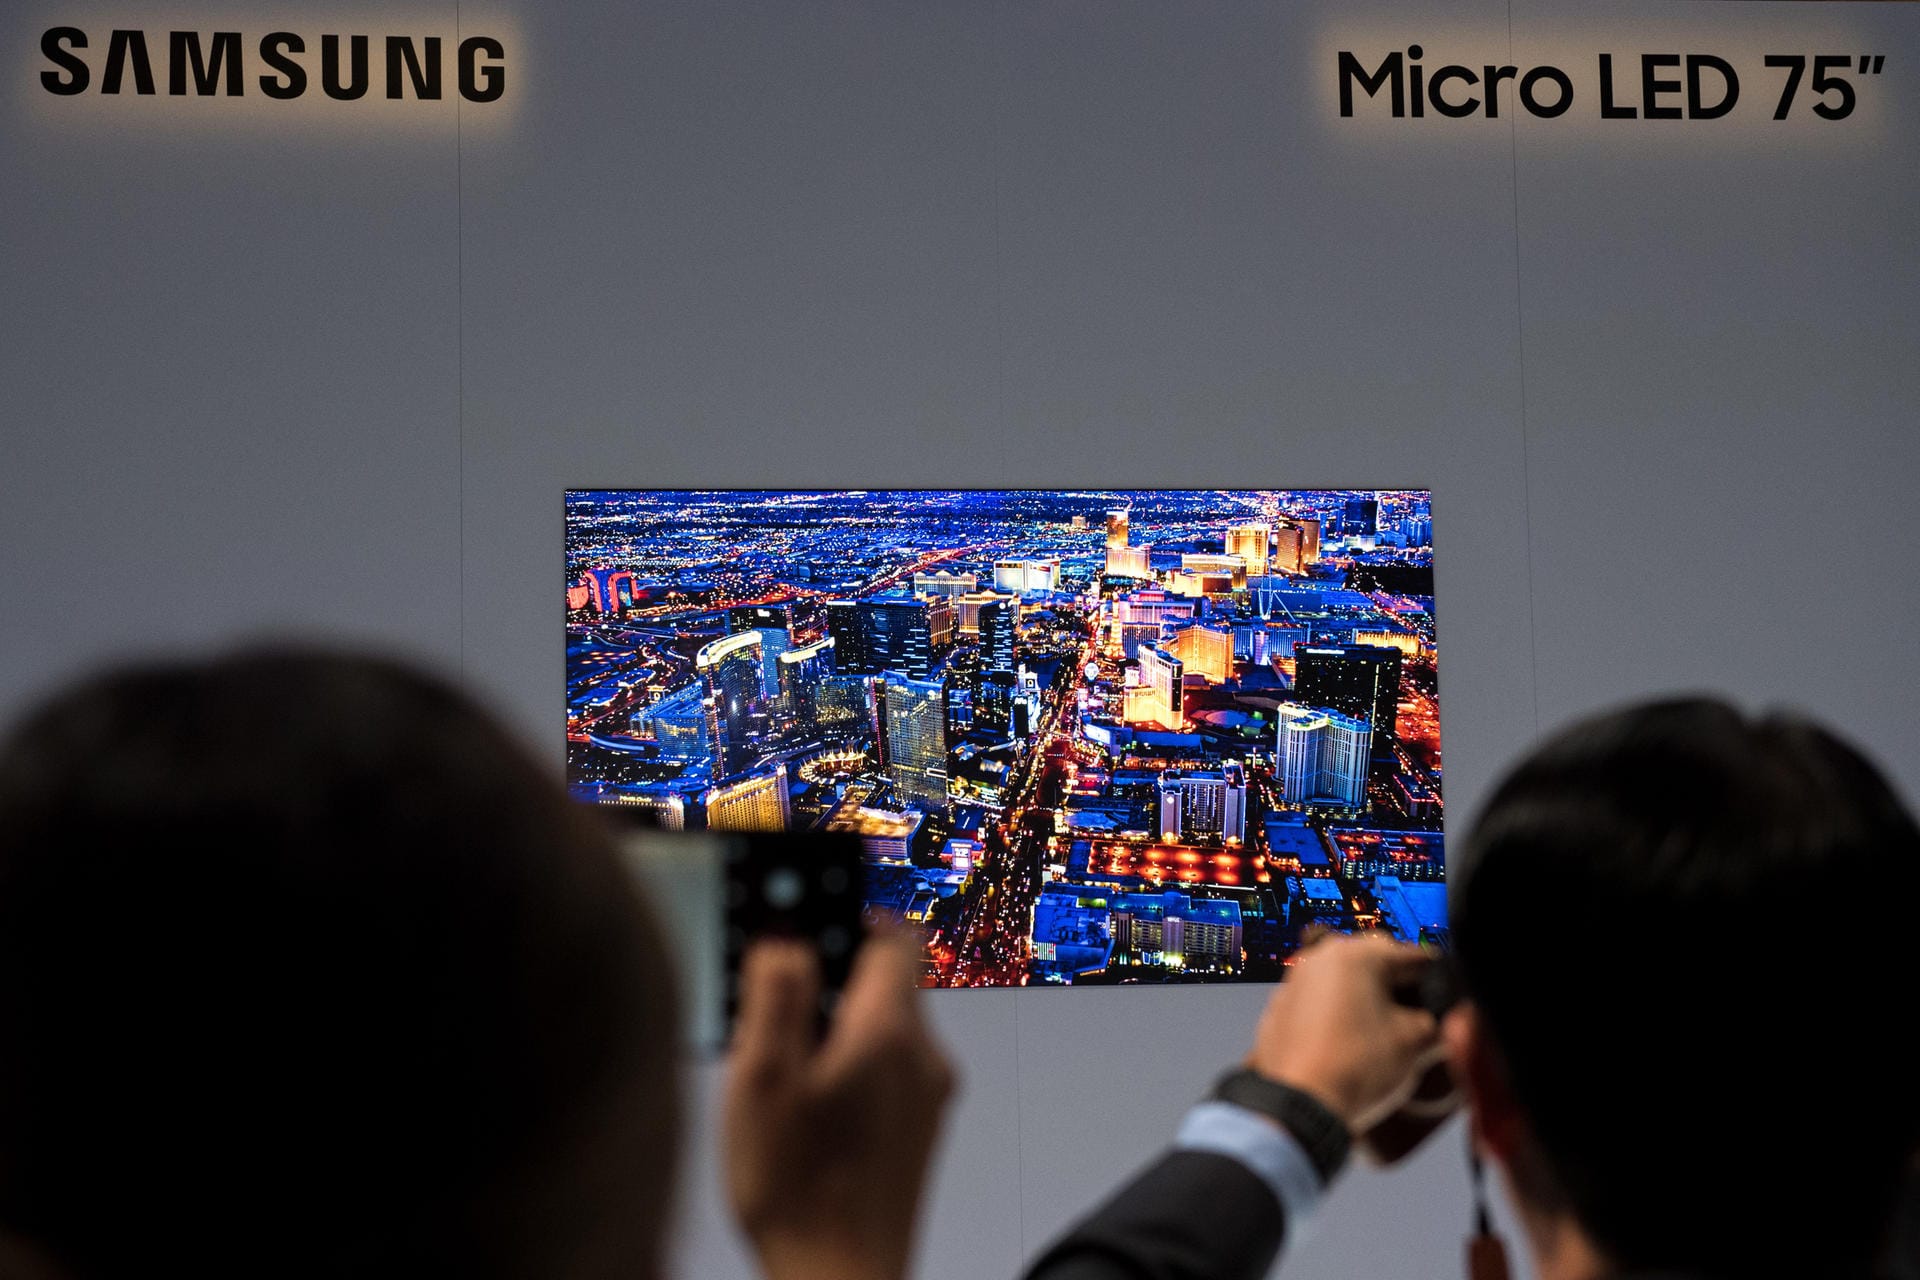 Auf der CES präsentieren die Hersteller ihre High-End-Fernseher. Samsungs Micro LED 75 ist modular aus randlosen Displaybausteinen aufgebaut und arbeitet mit selbstleuchtenden Dioden, die hohe Kontraste und tiefe Schwarzwerte bei sehr hoher Gesamthelligkeit ermöglichen.